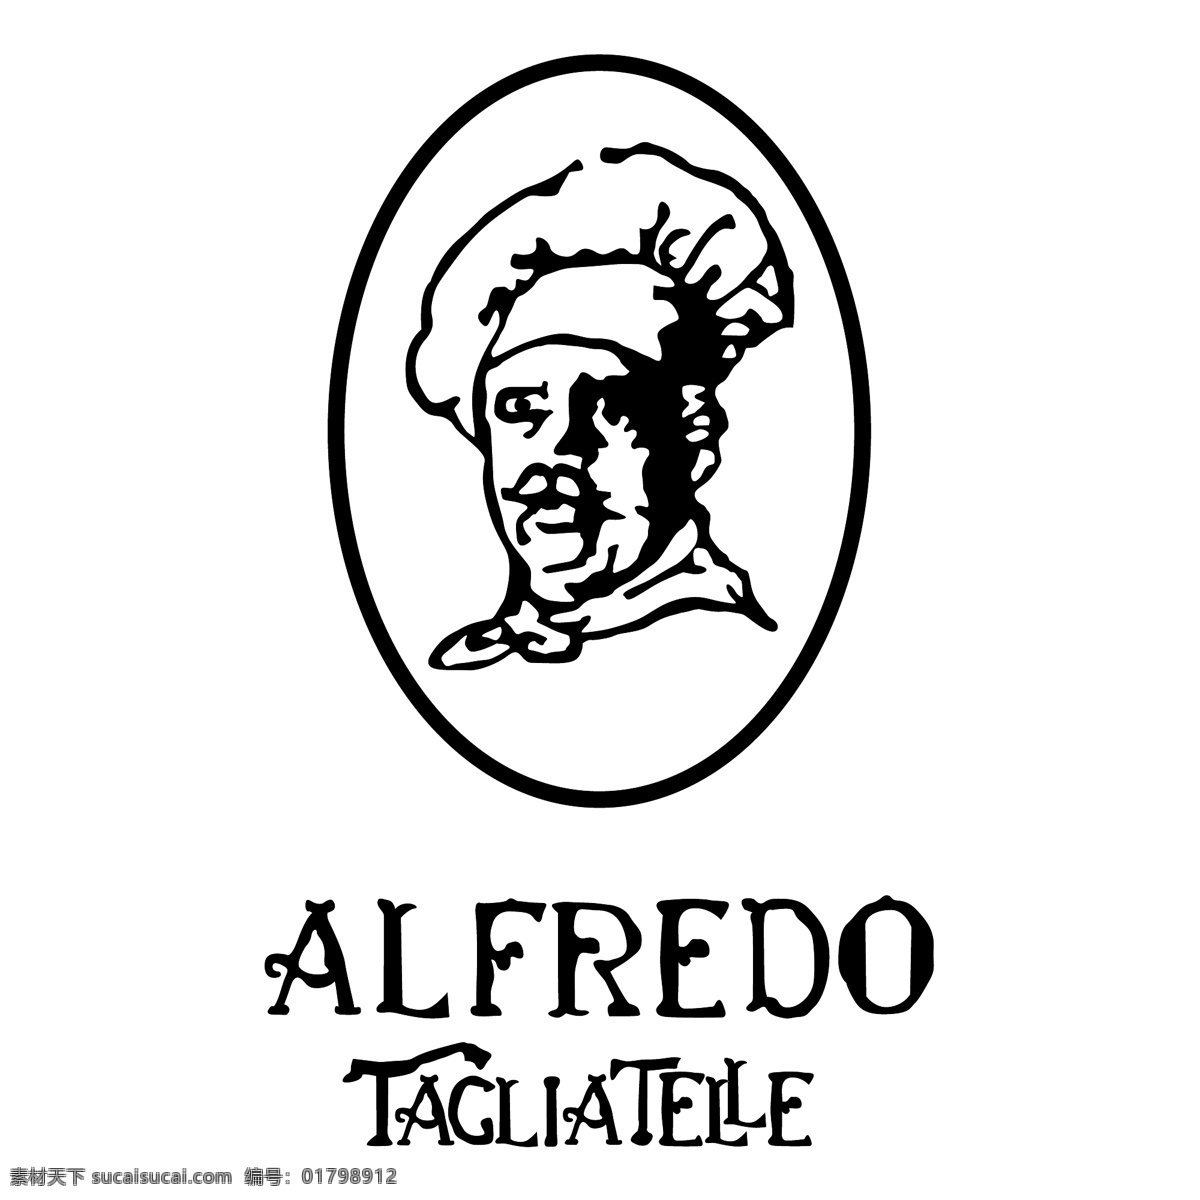 阿尔弗雷 意大利 面条 自由 标志 标识 psd源文件 logo设计